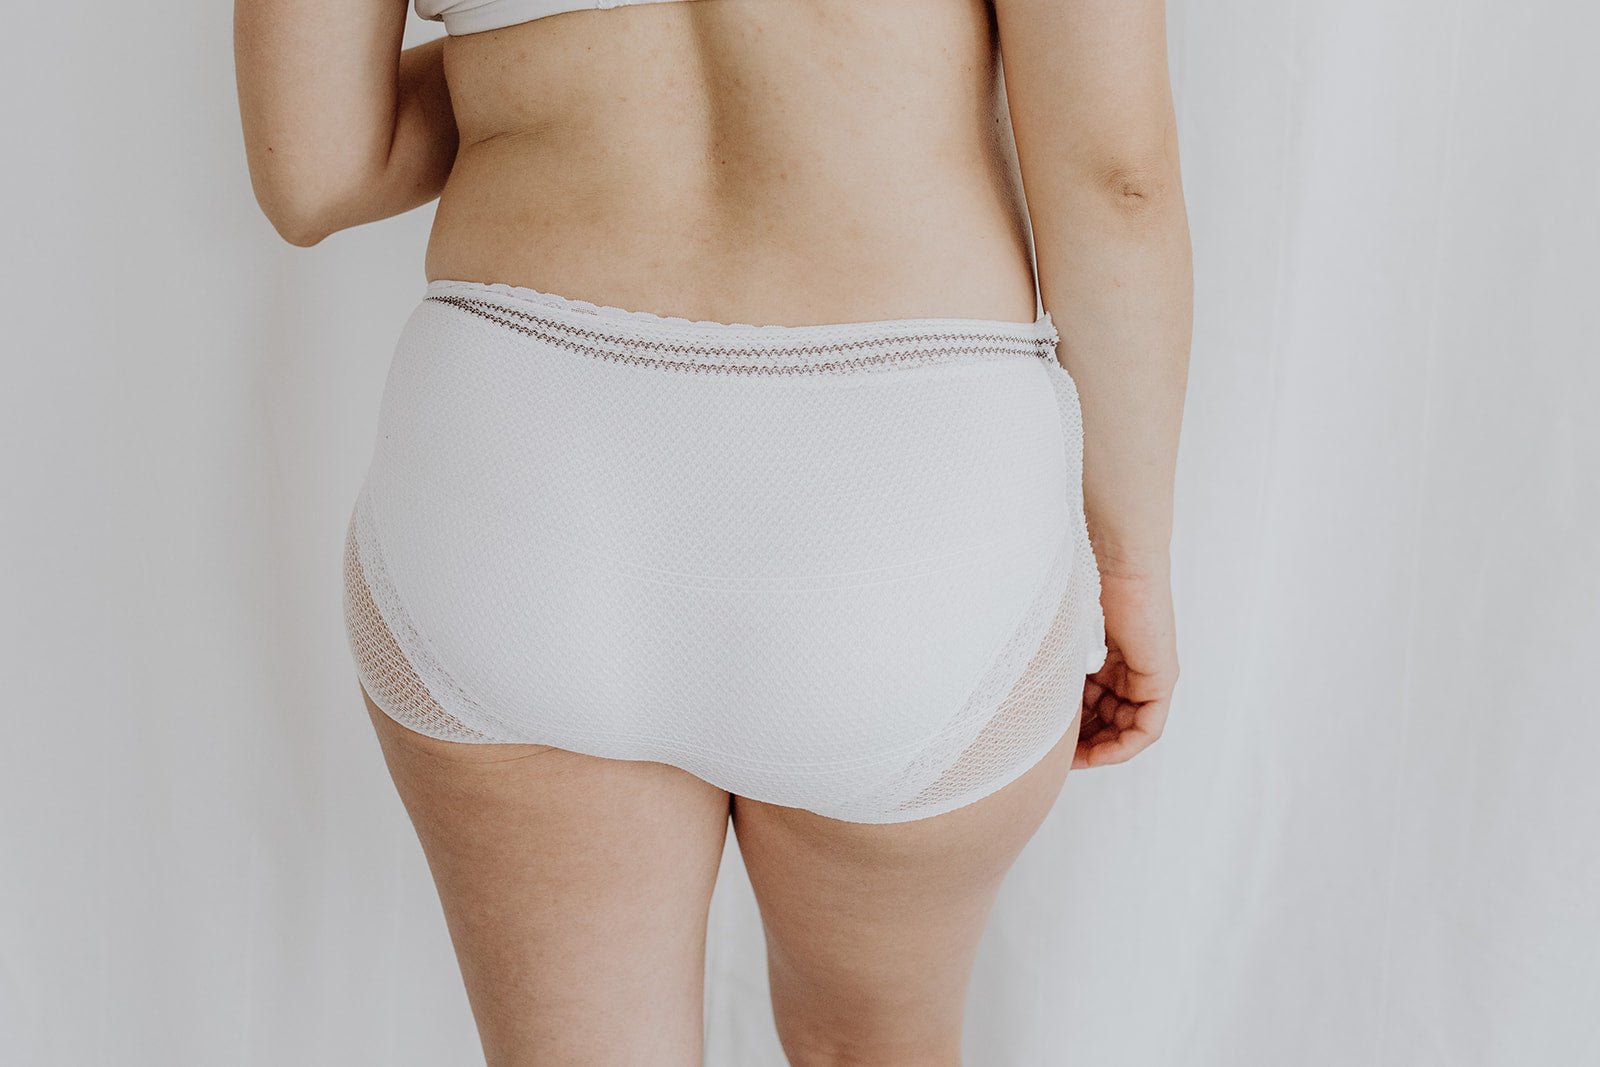 Buy Postpartum Mesh Underwear Online